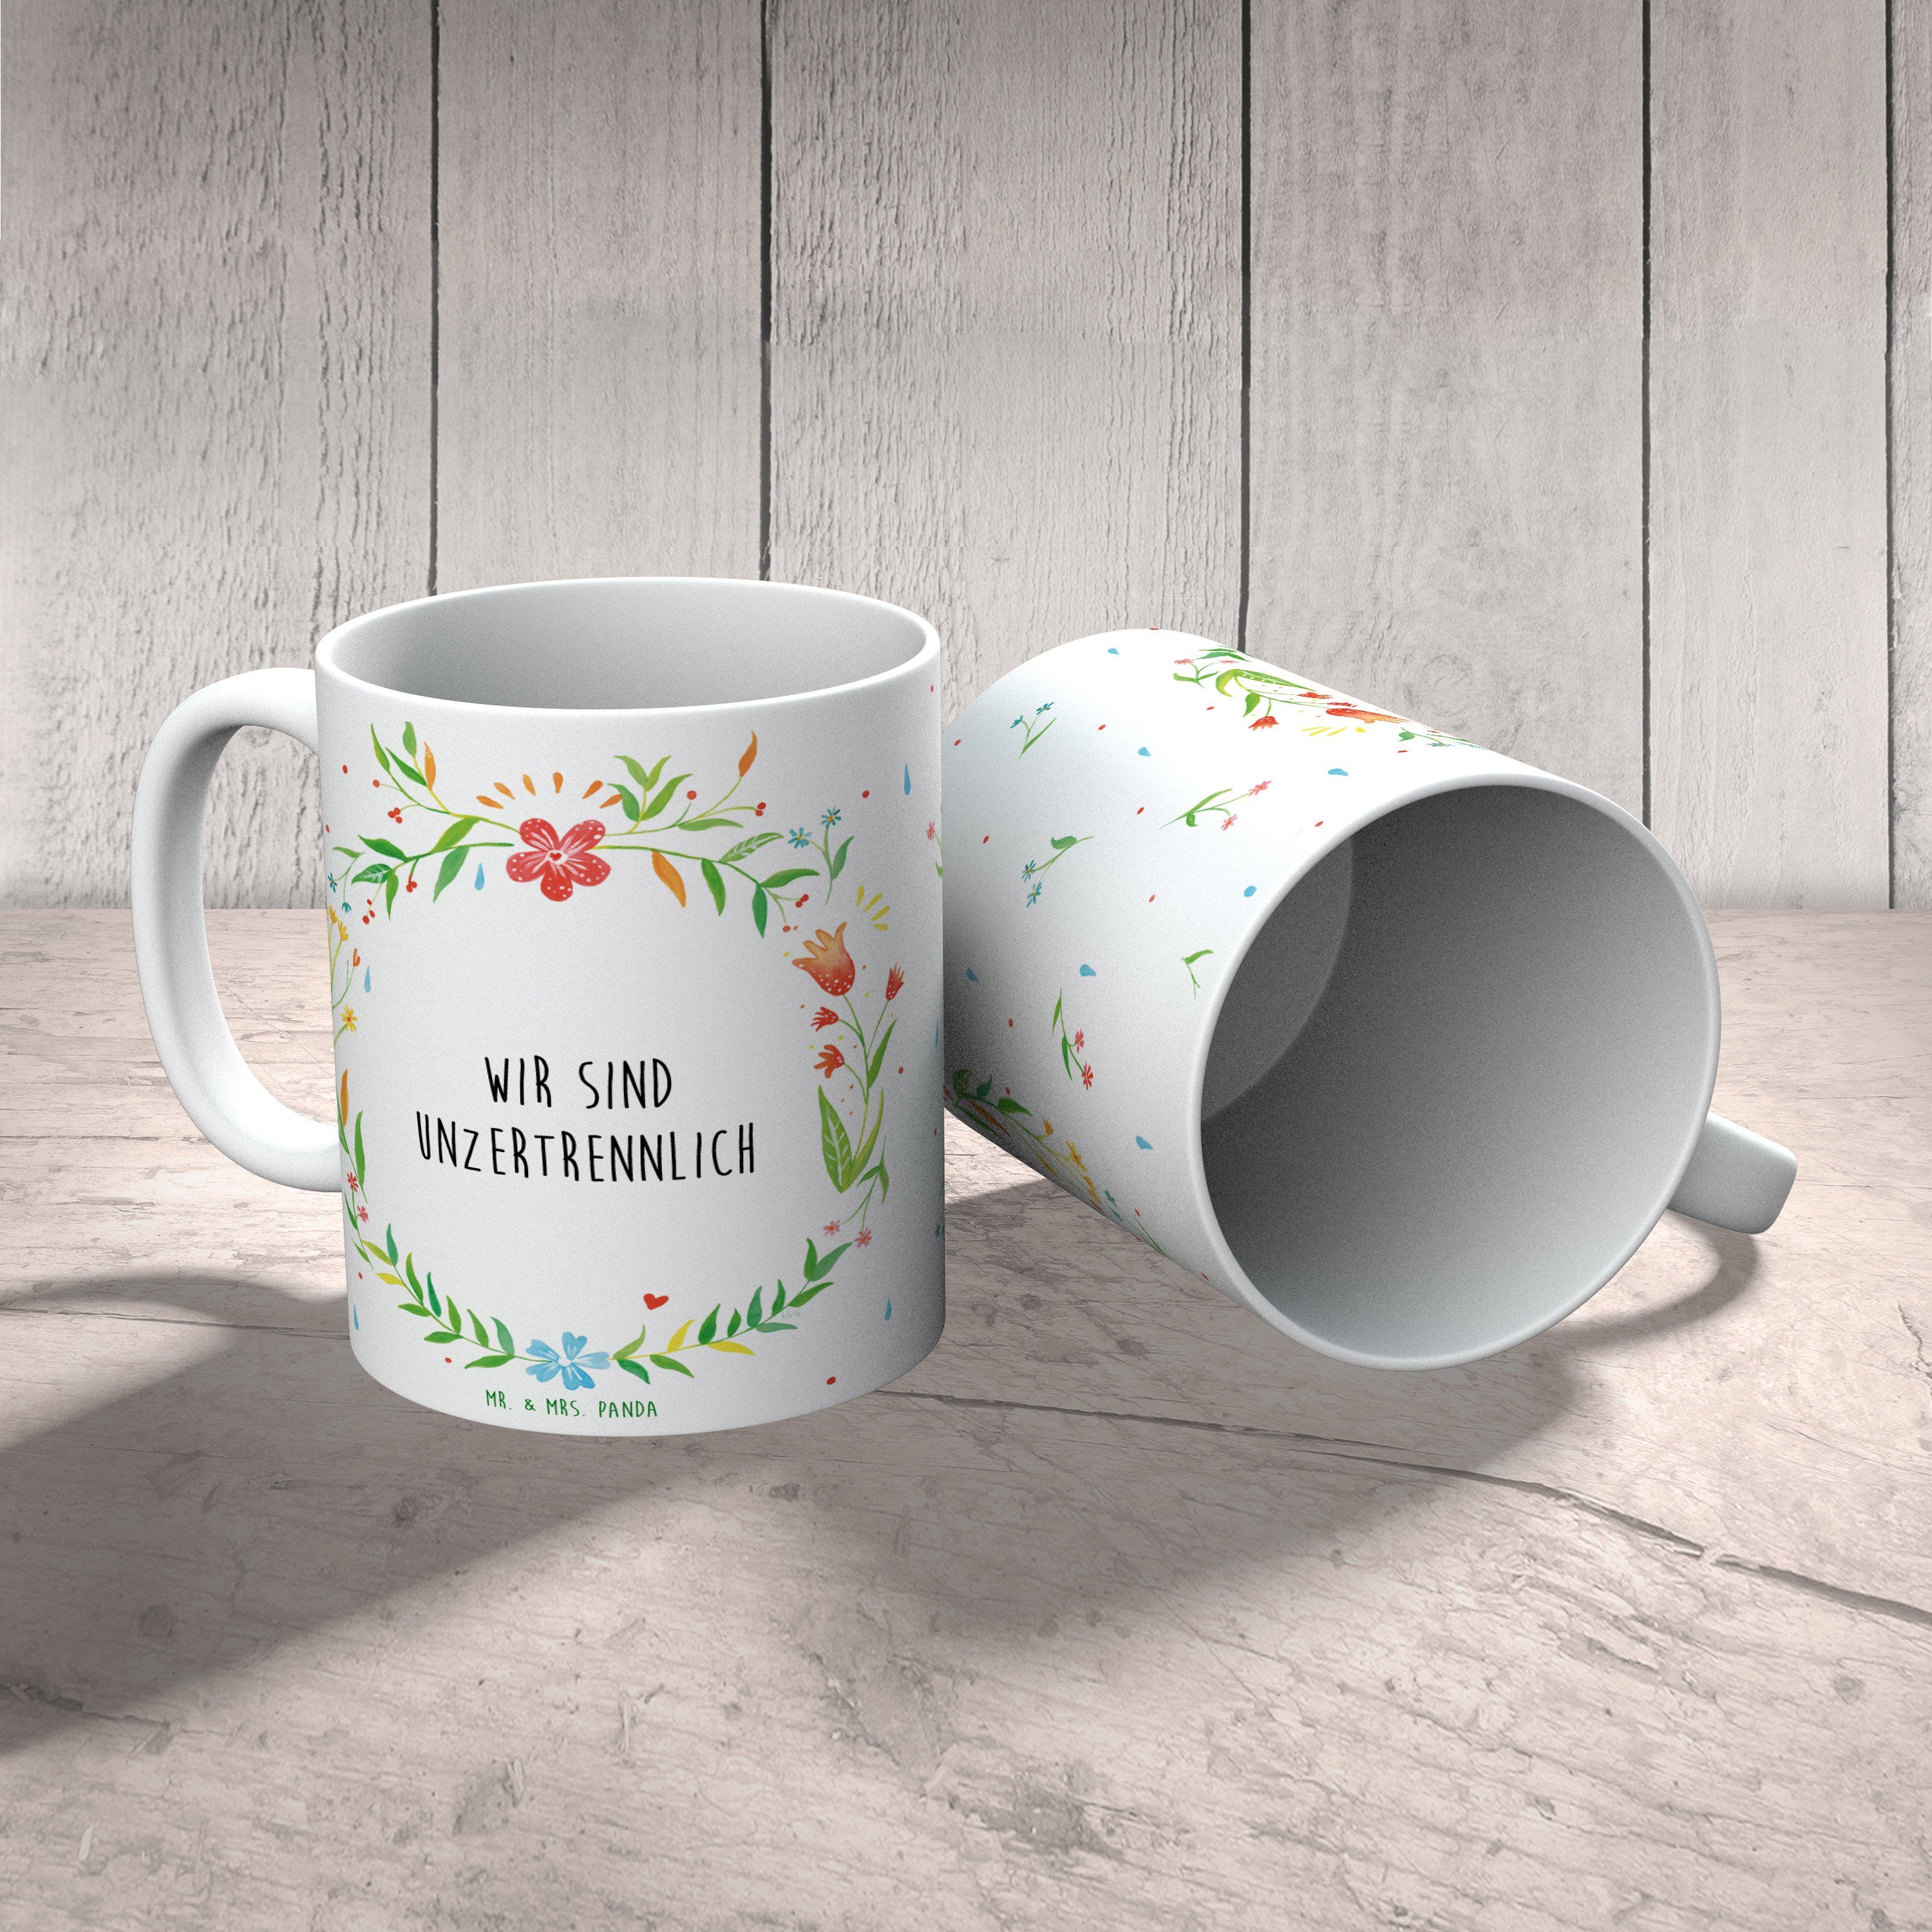 Mr. & Mrs. Panda Tasse Tasse Teetasse, Geschenk, sind T, Motive, Keramik - unzertrennlich Becher, Wir